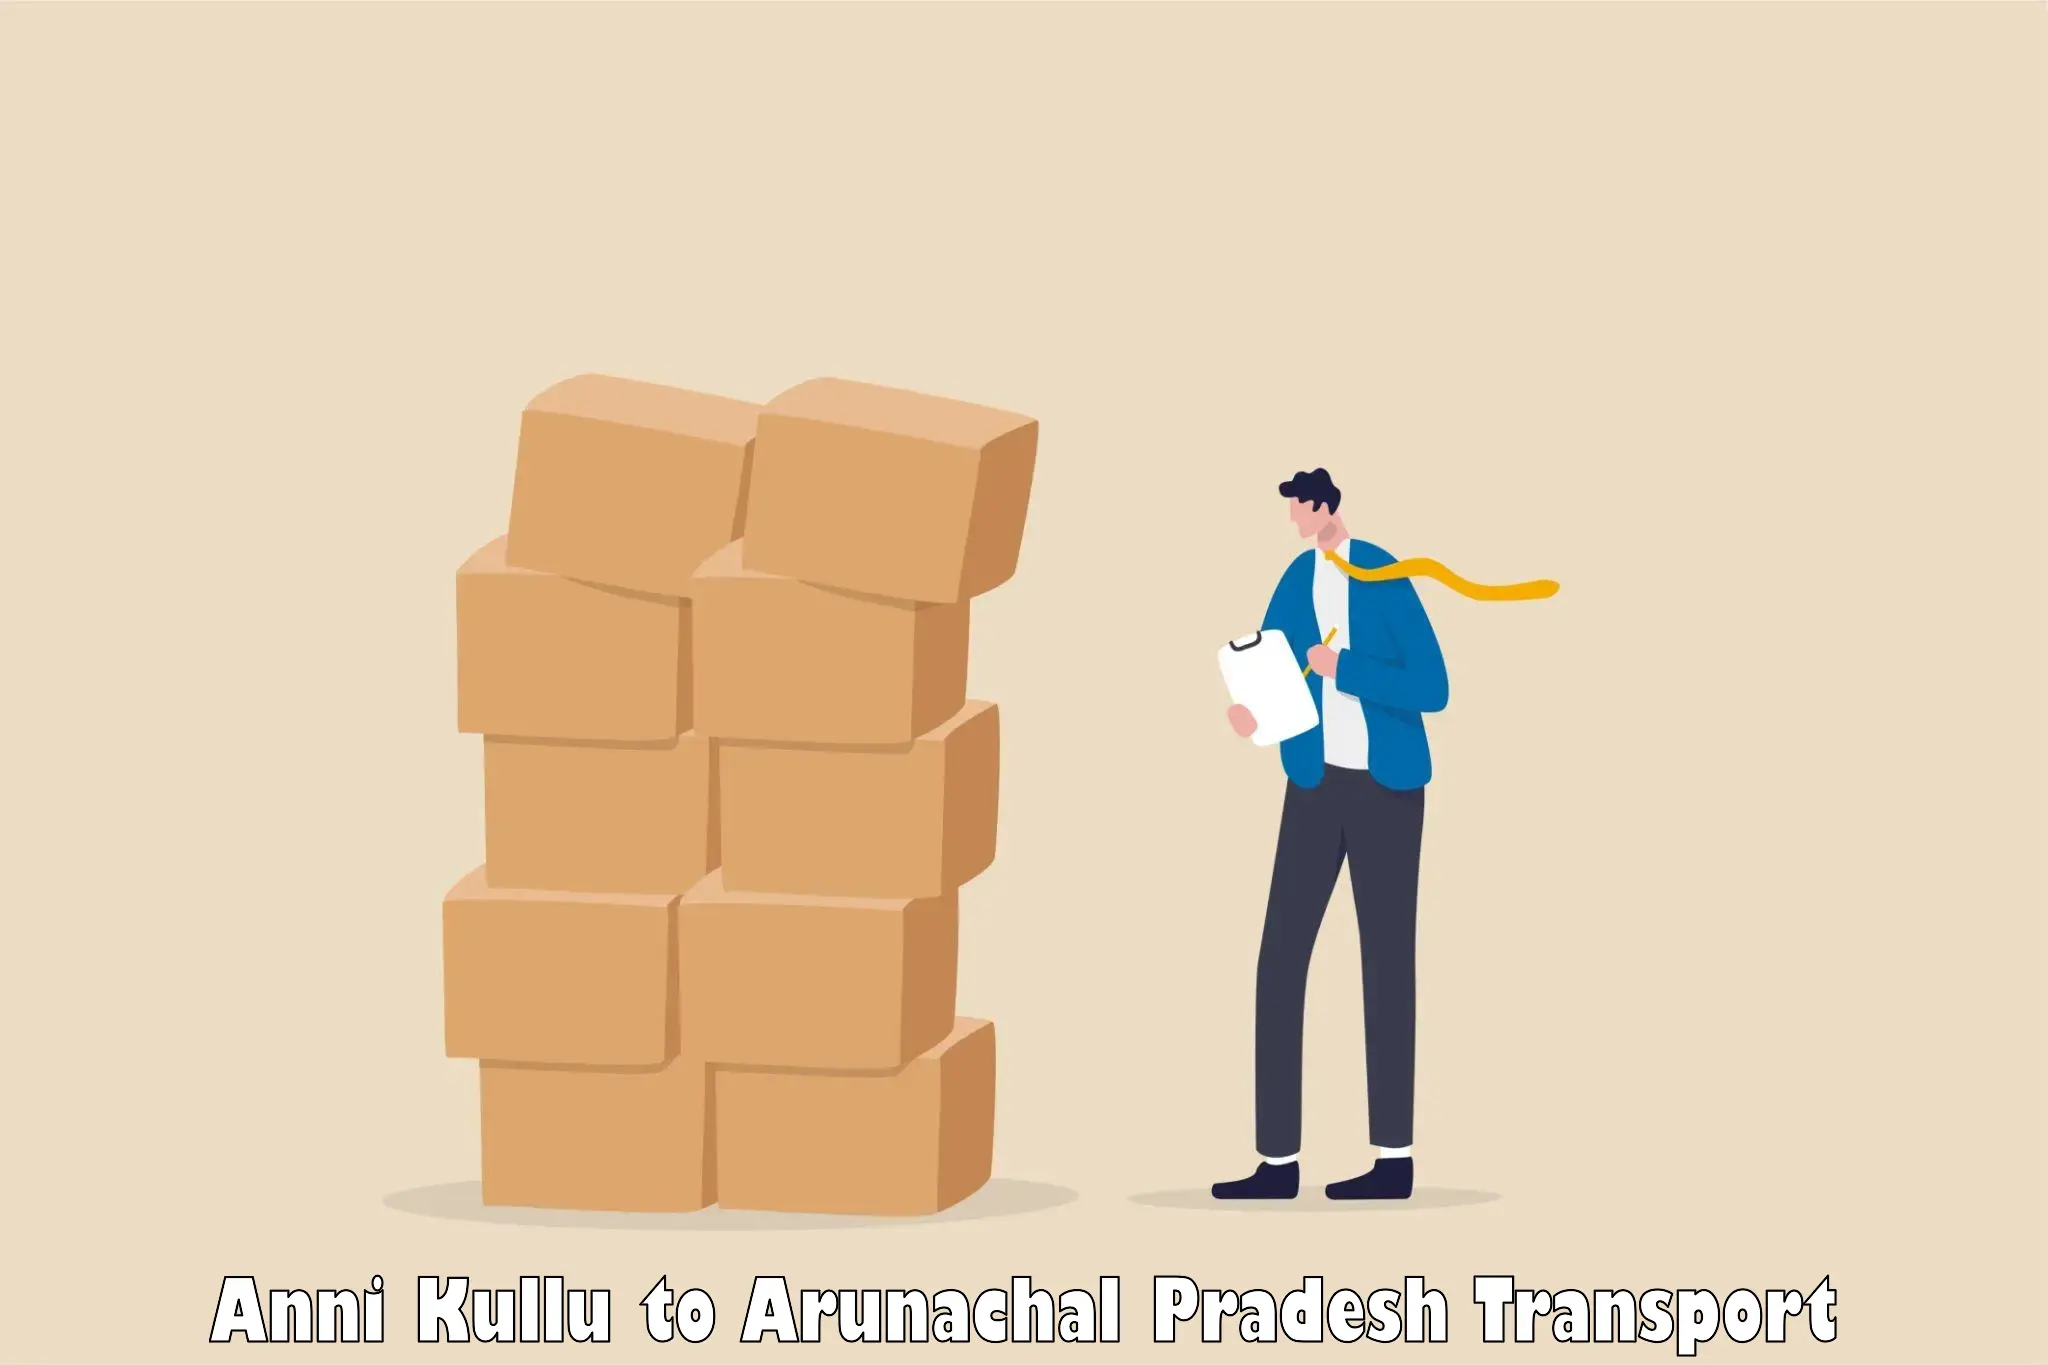 Cargo train transport services Anni Kullu to Arunachal Pradesh